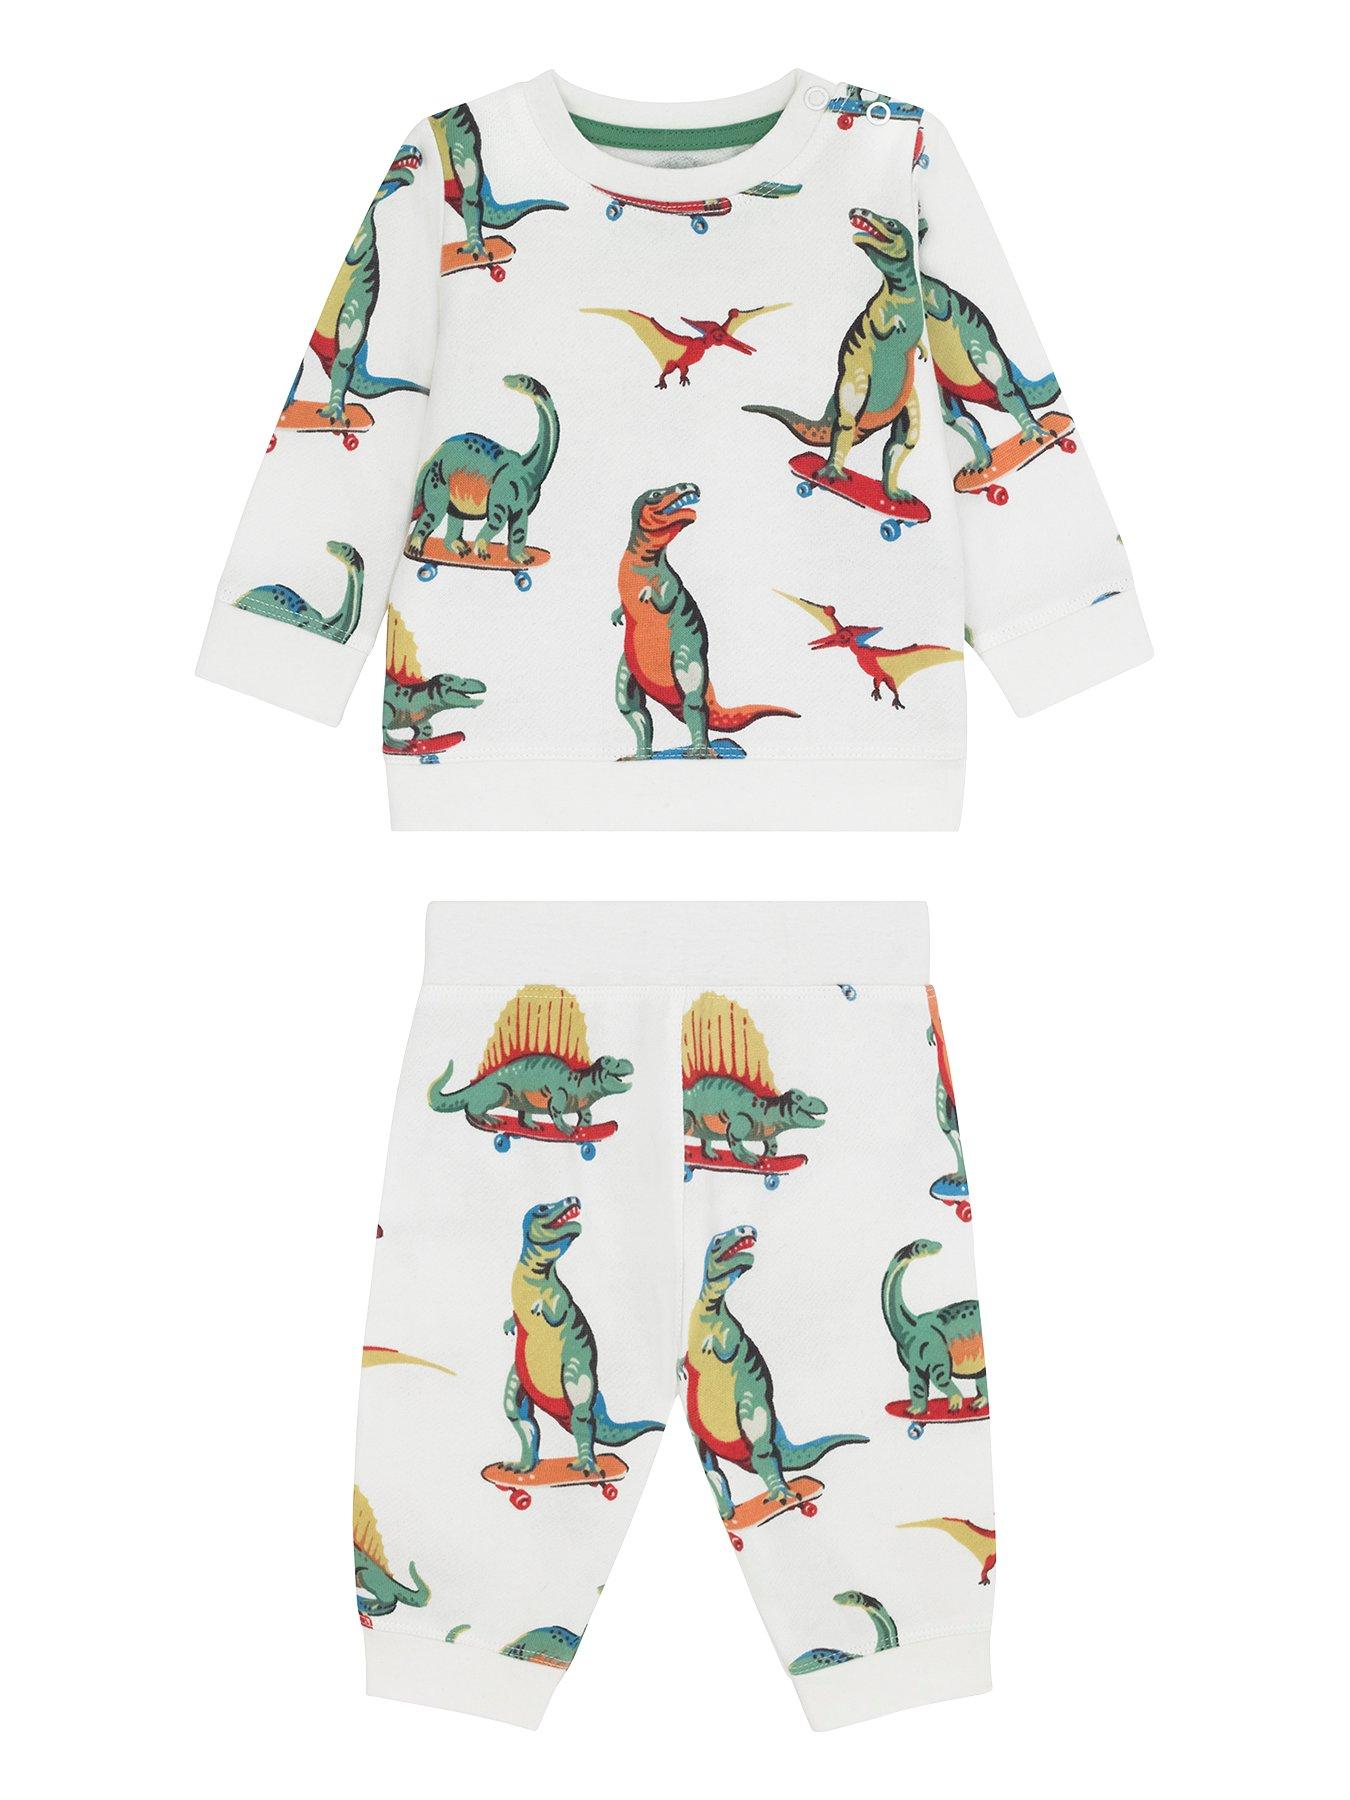 cath kidston dinosaur dress